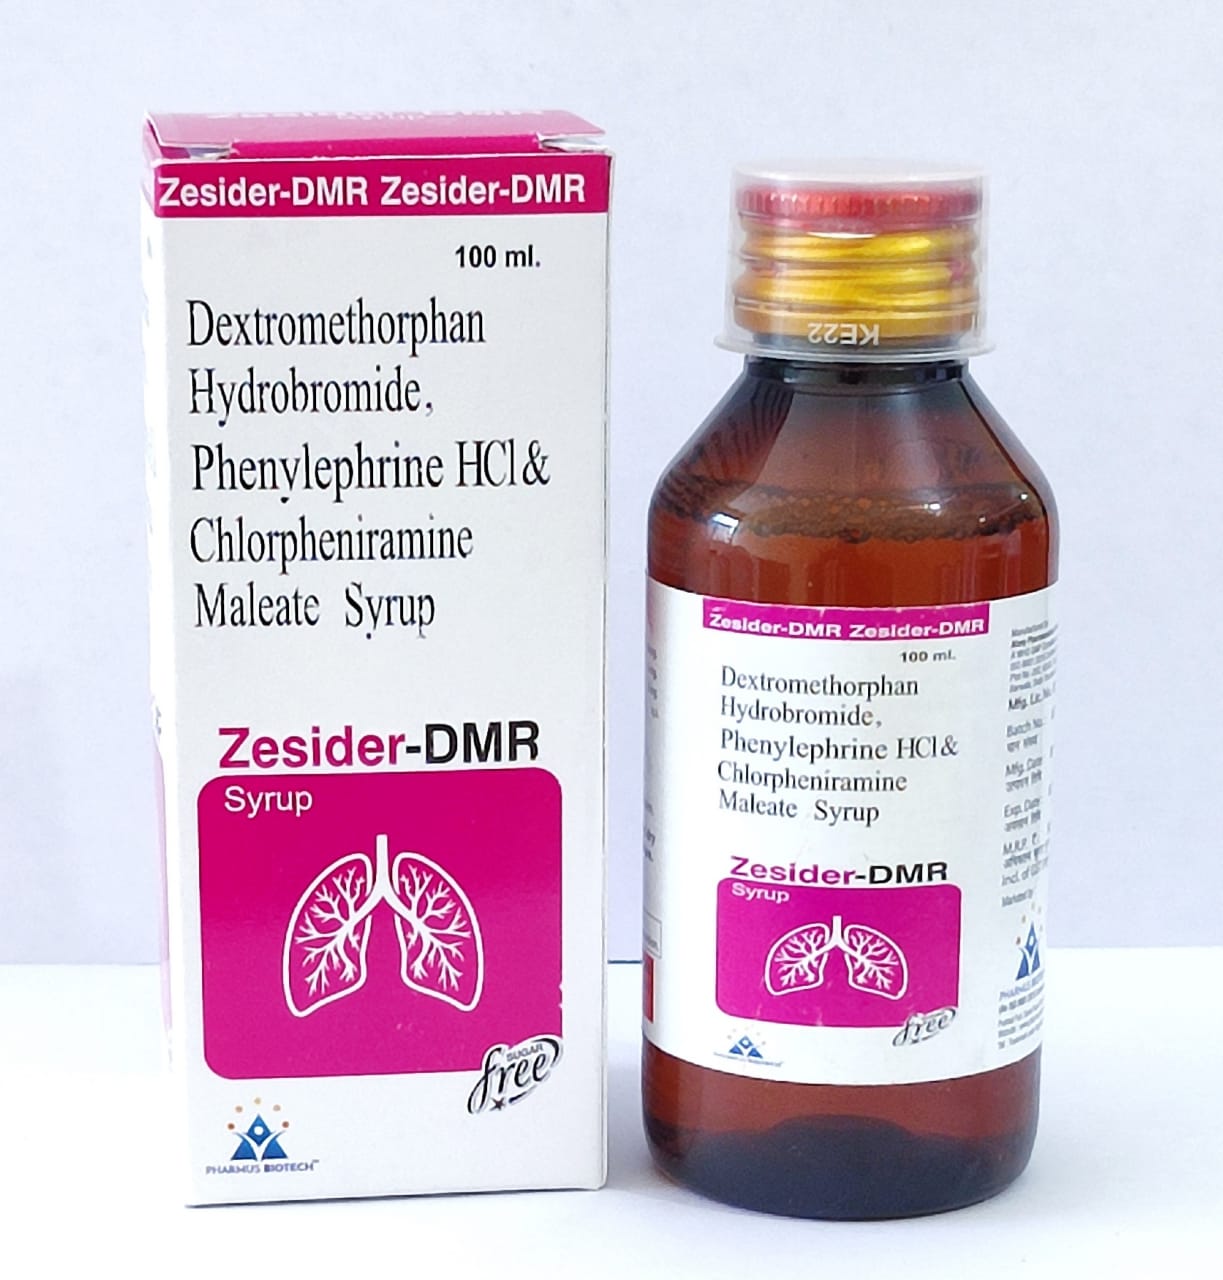 Zesider-DMR Syrup